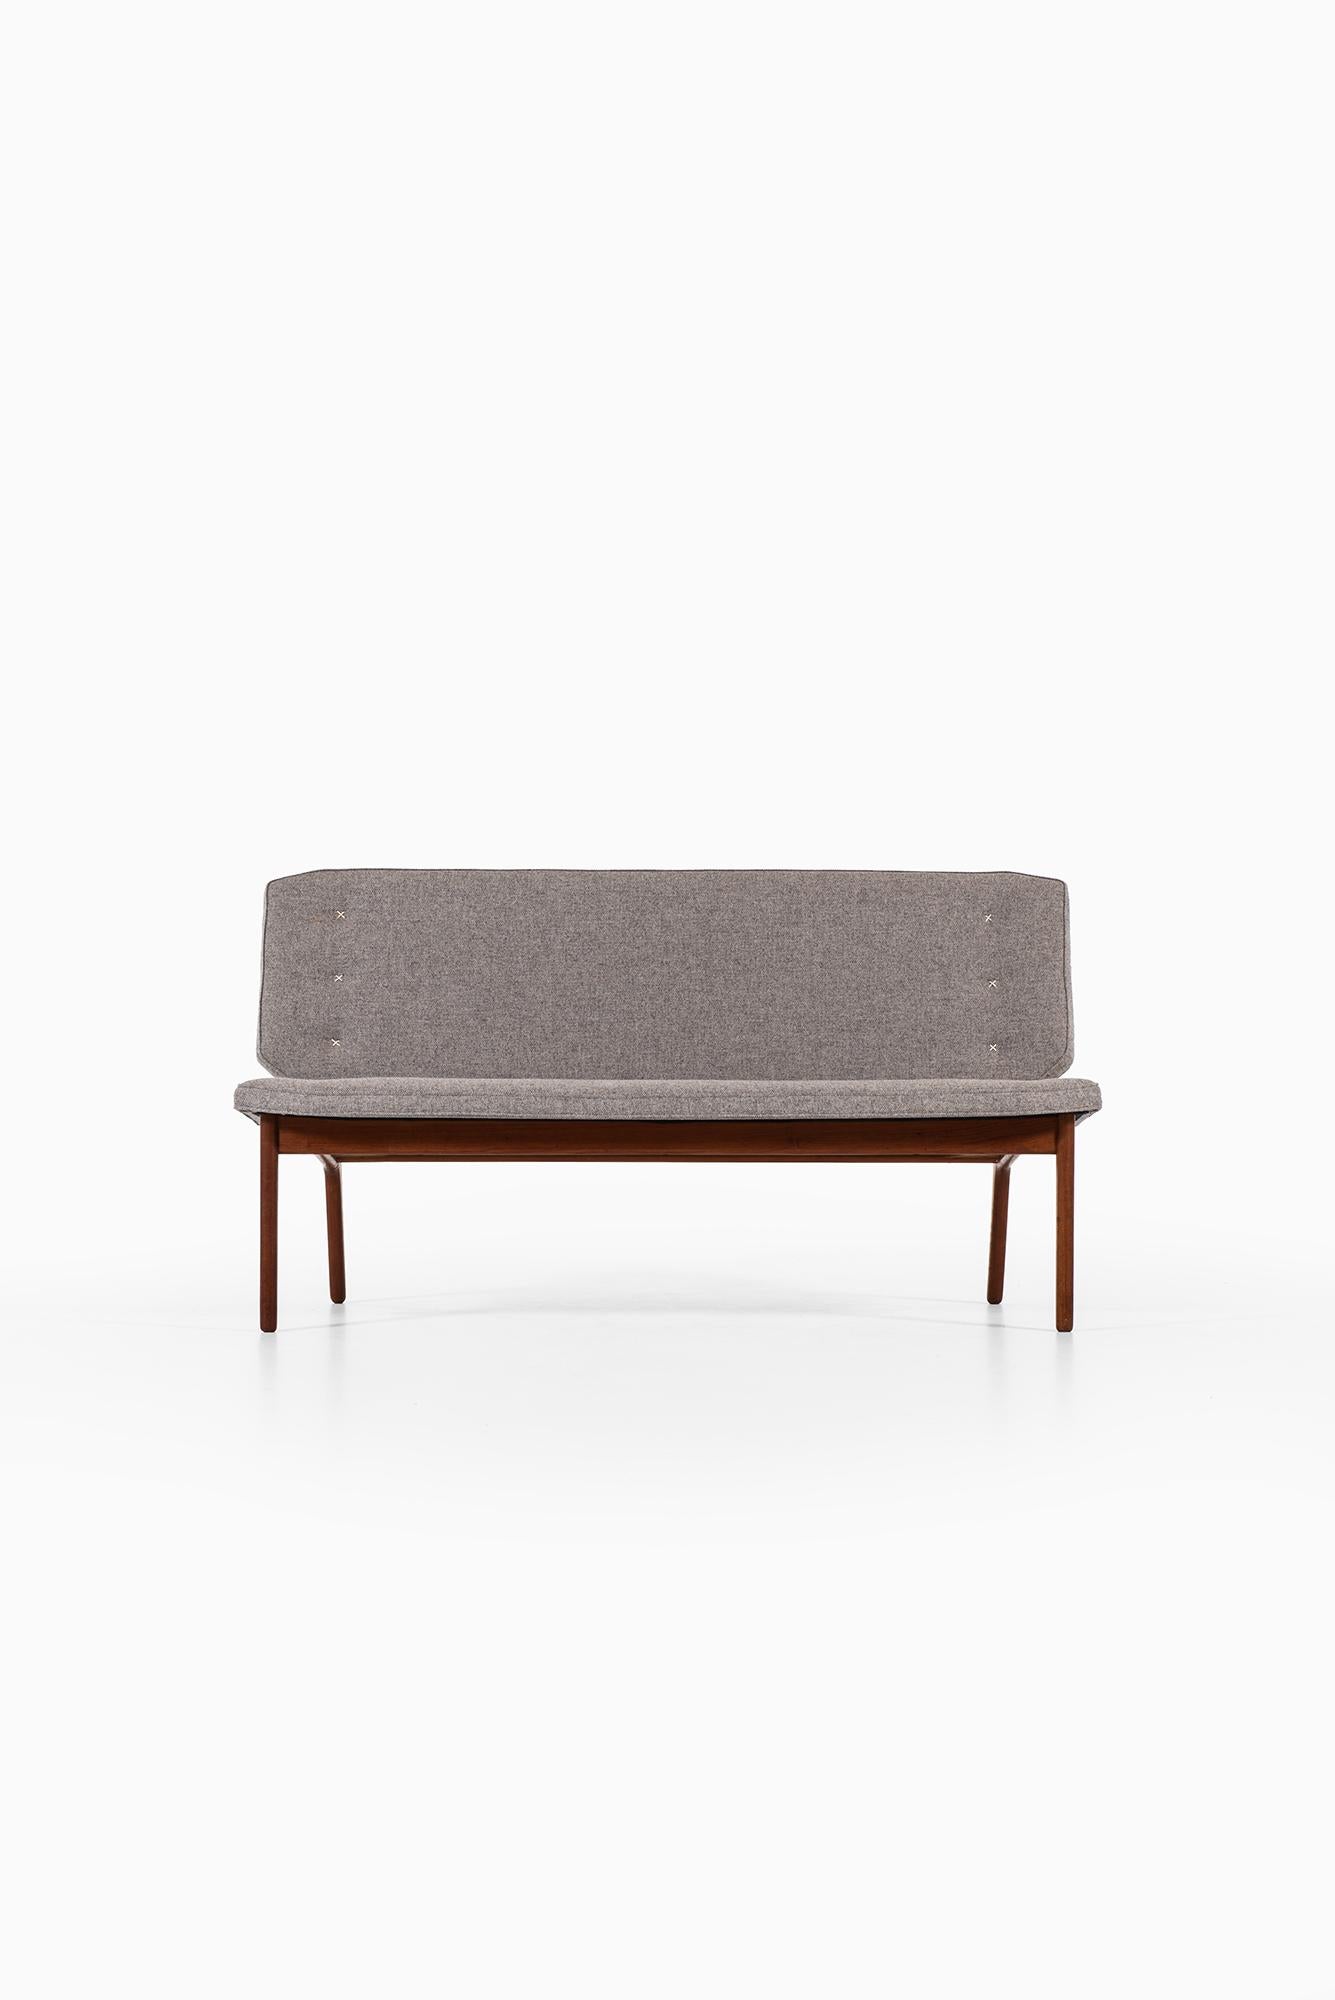 Seltenes Sofa eines unbekannten Designers. Produziert in Dänemark.